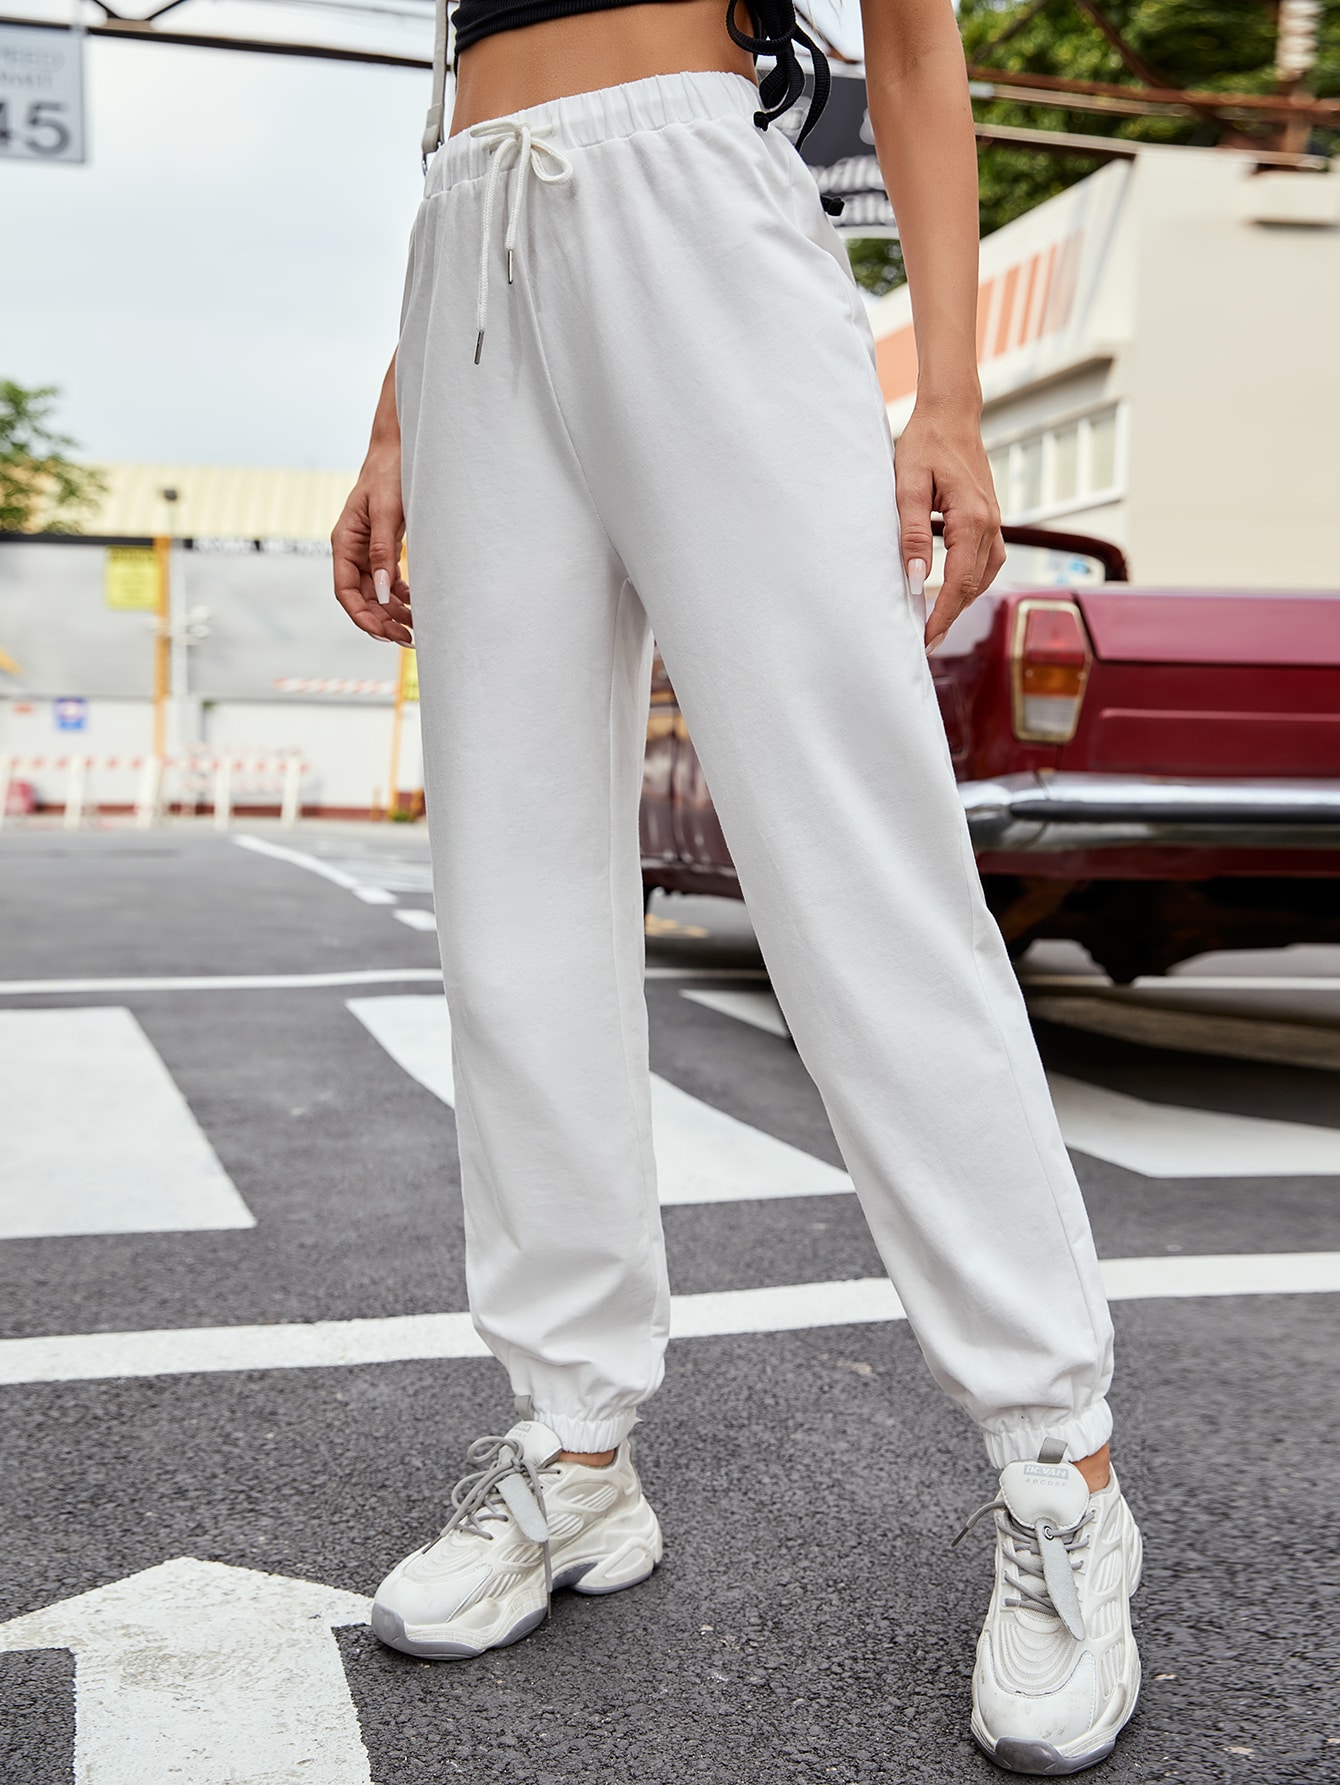 lace-up plain color trousers NSCAI61643